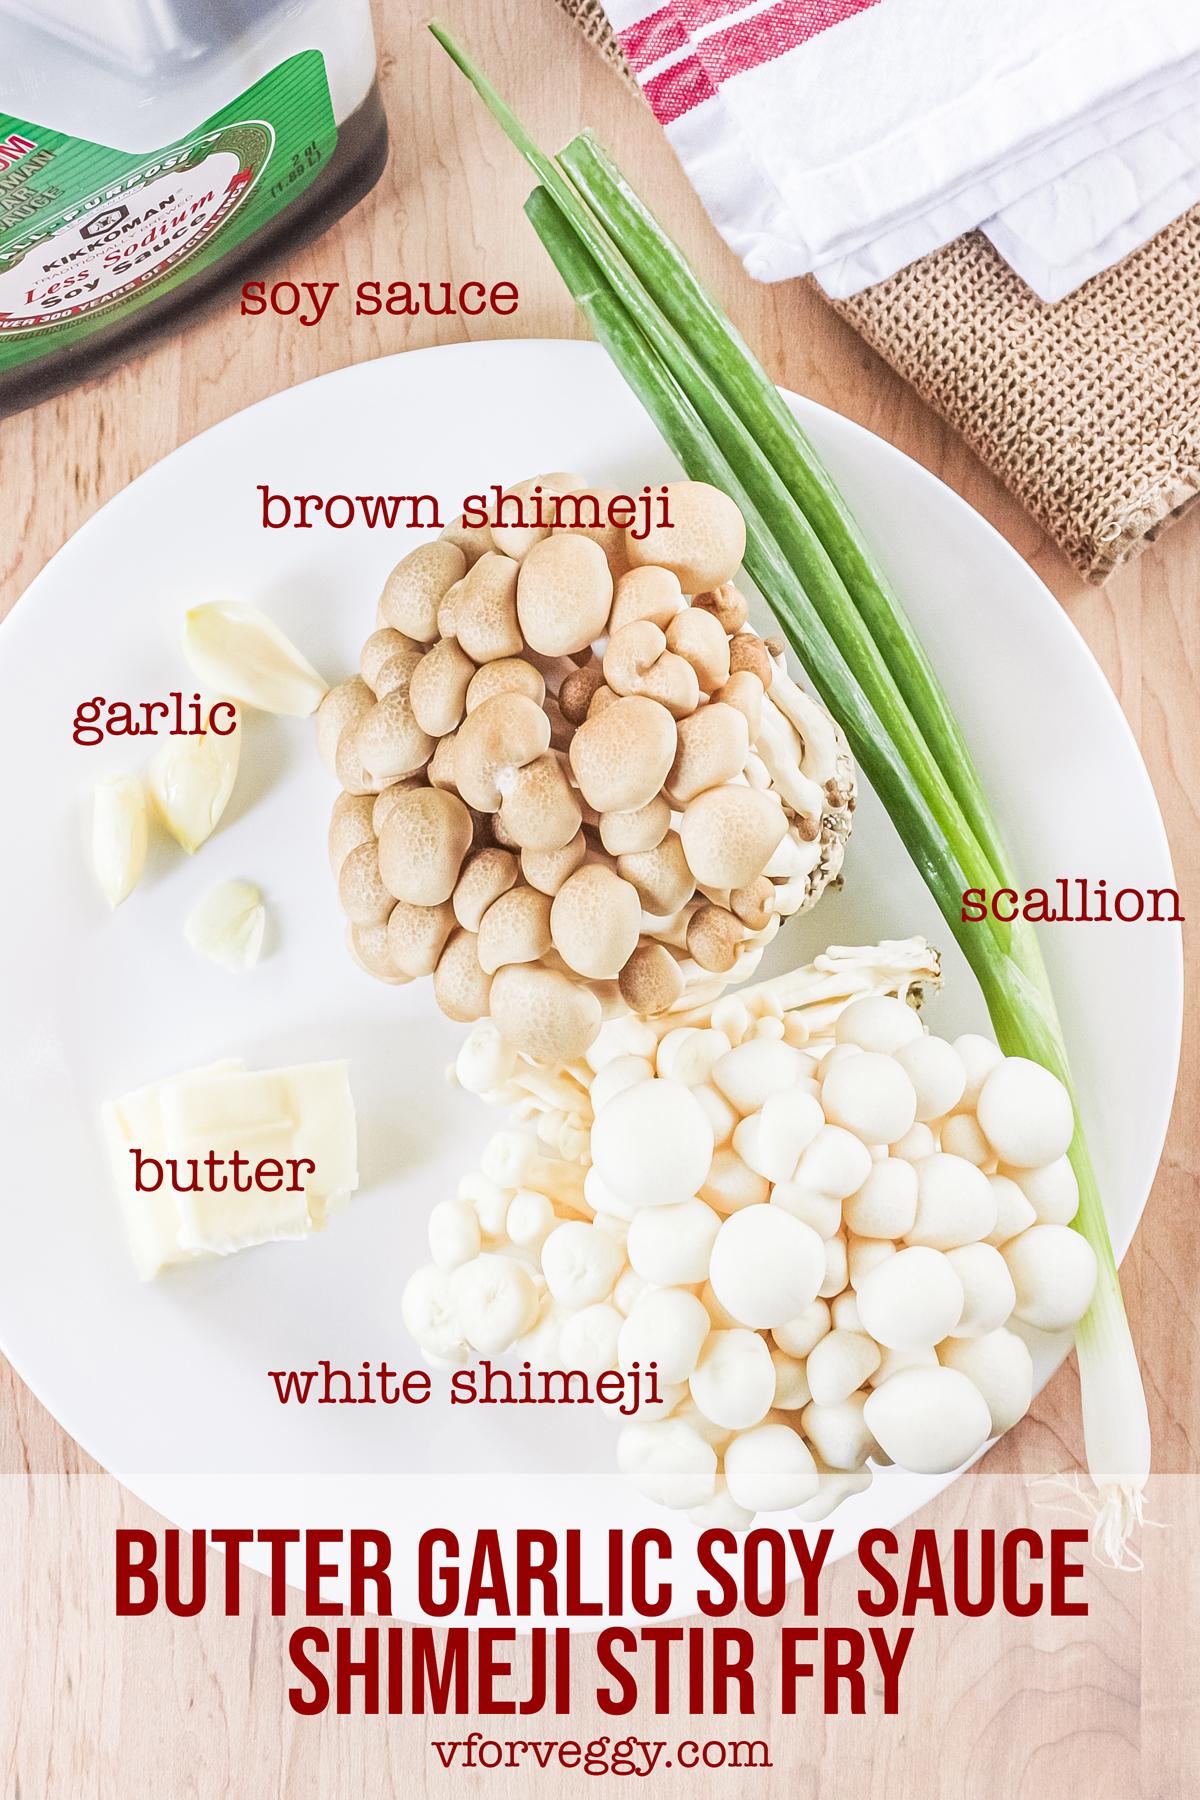 Ingredients for Butter Garlic Soy Sauce Shimeji Stir Fry